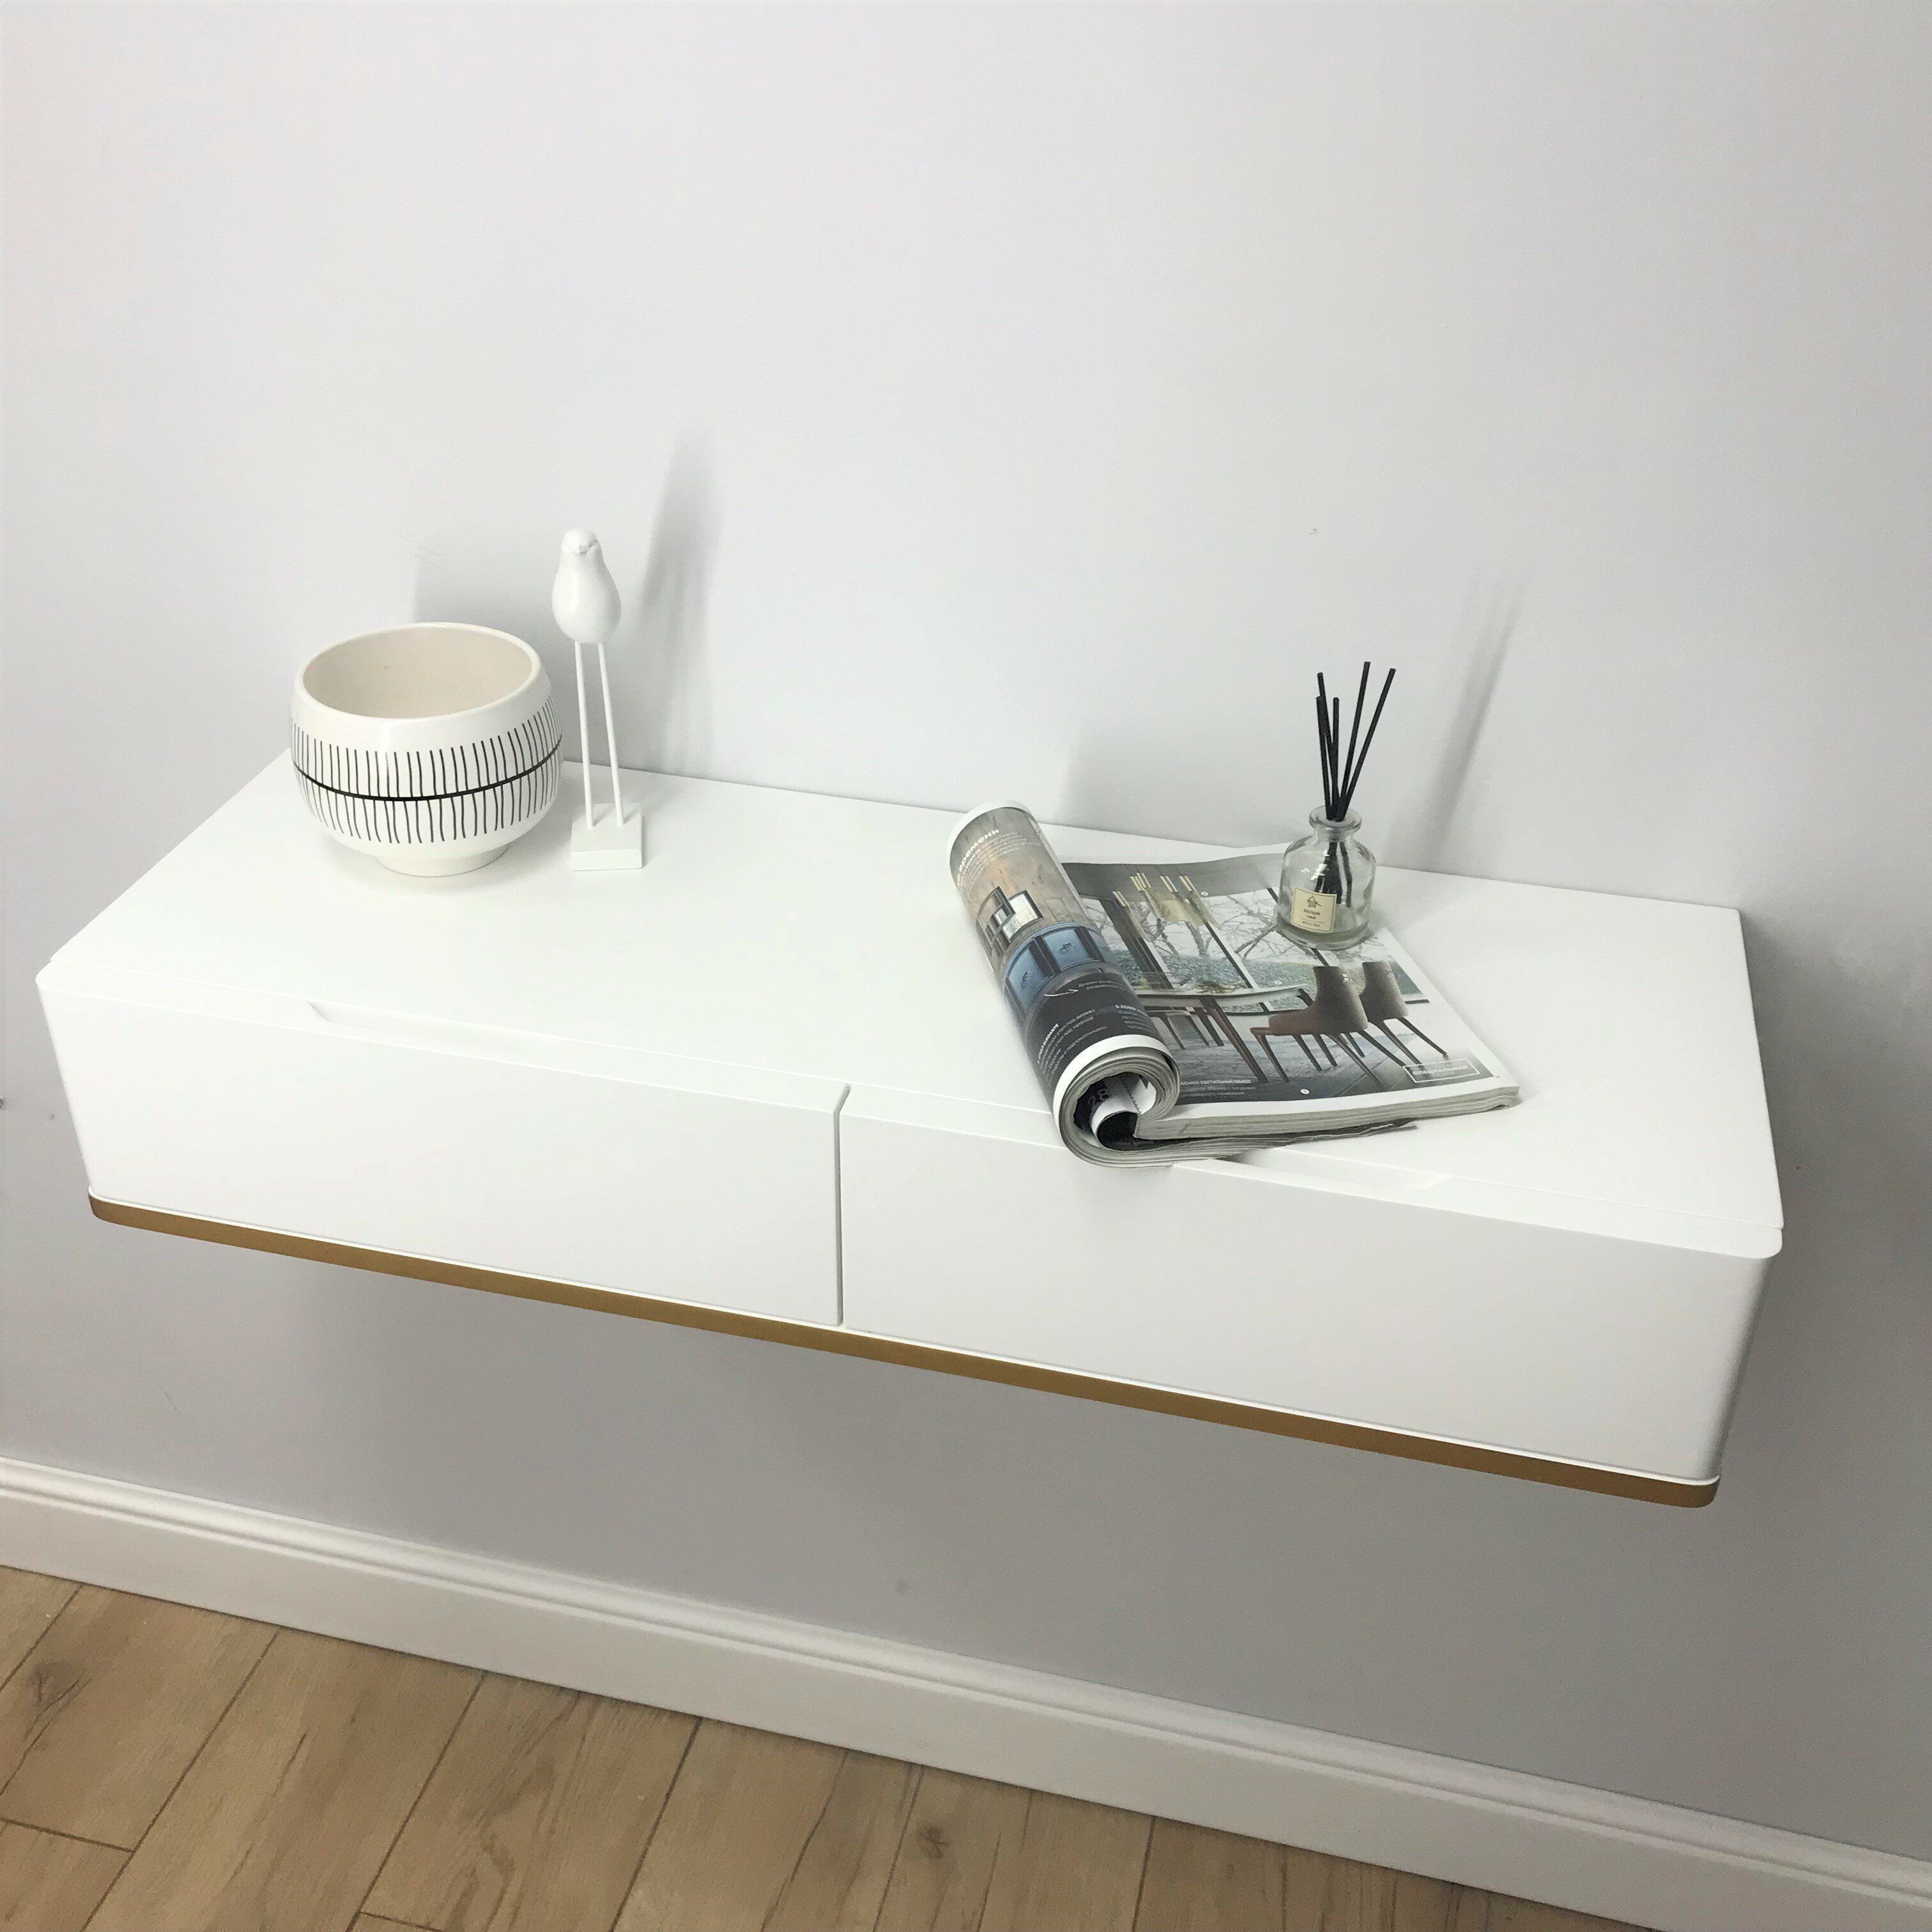 Туалетный столик в эмали подвесной, Bianko консольный столик, консоль навесная белая в спальню, в прихожую 100х32х16 см. Дизайнерская мебель Grande House - фотография № 2